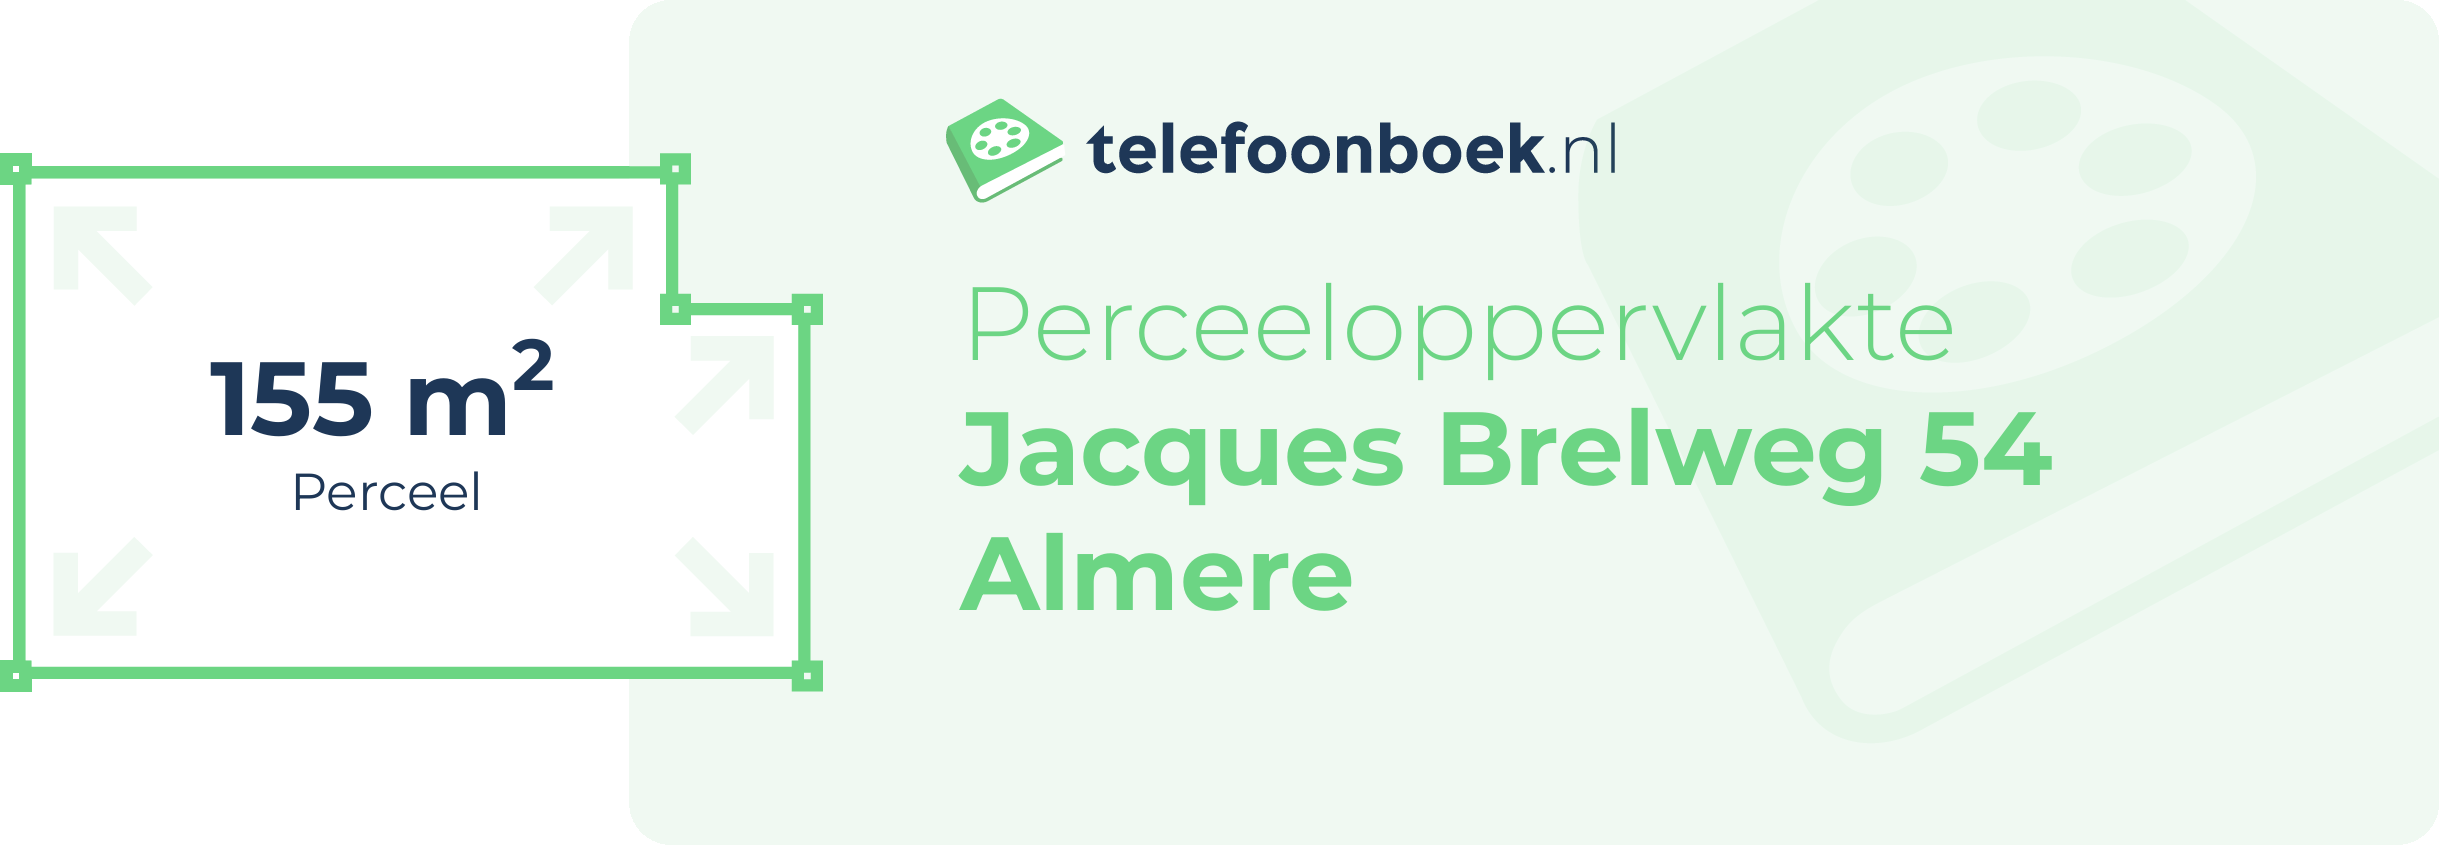 Perceeloppervlakte Jacques Brelweg 54 Almere